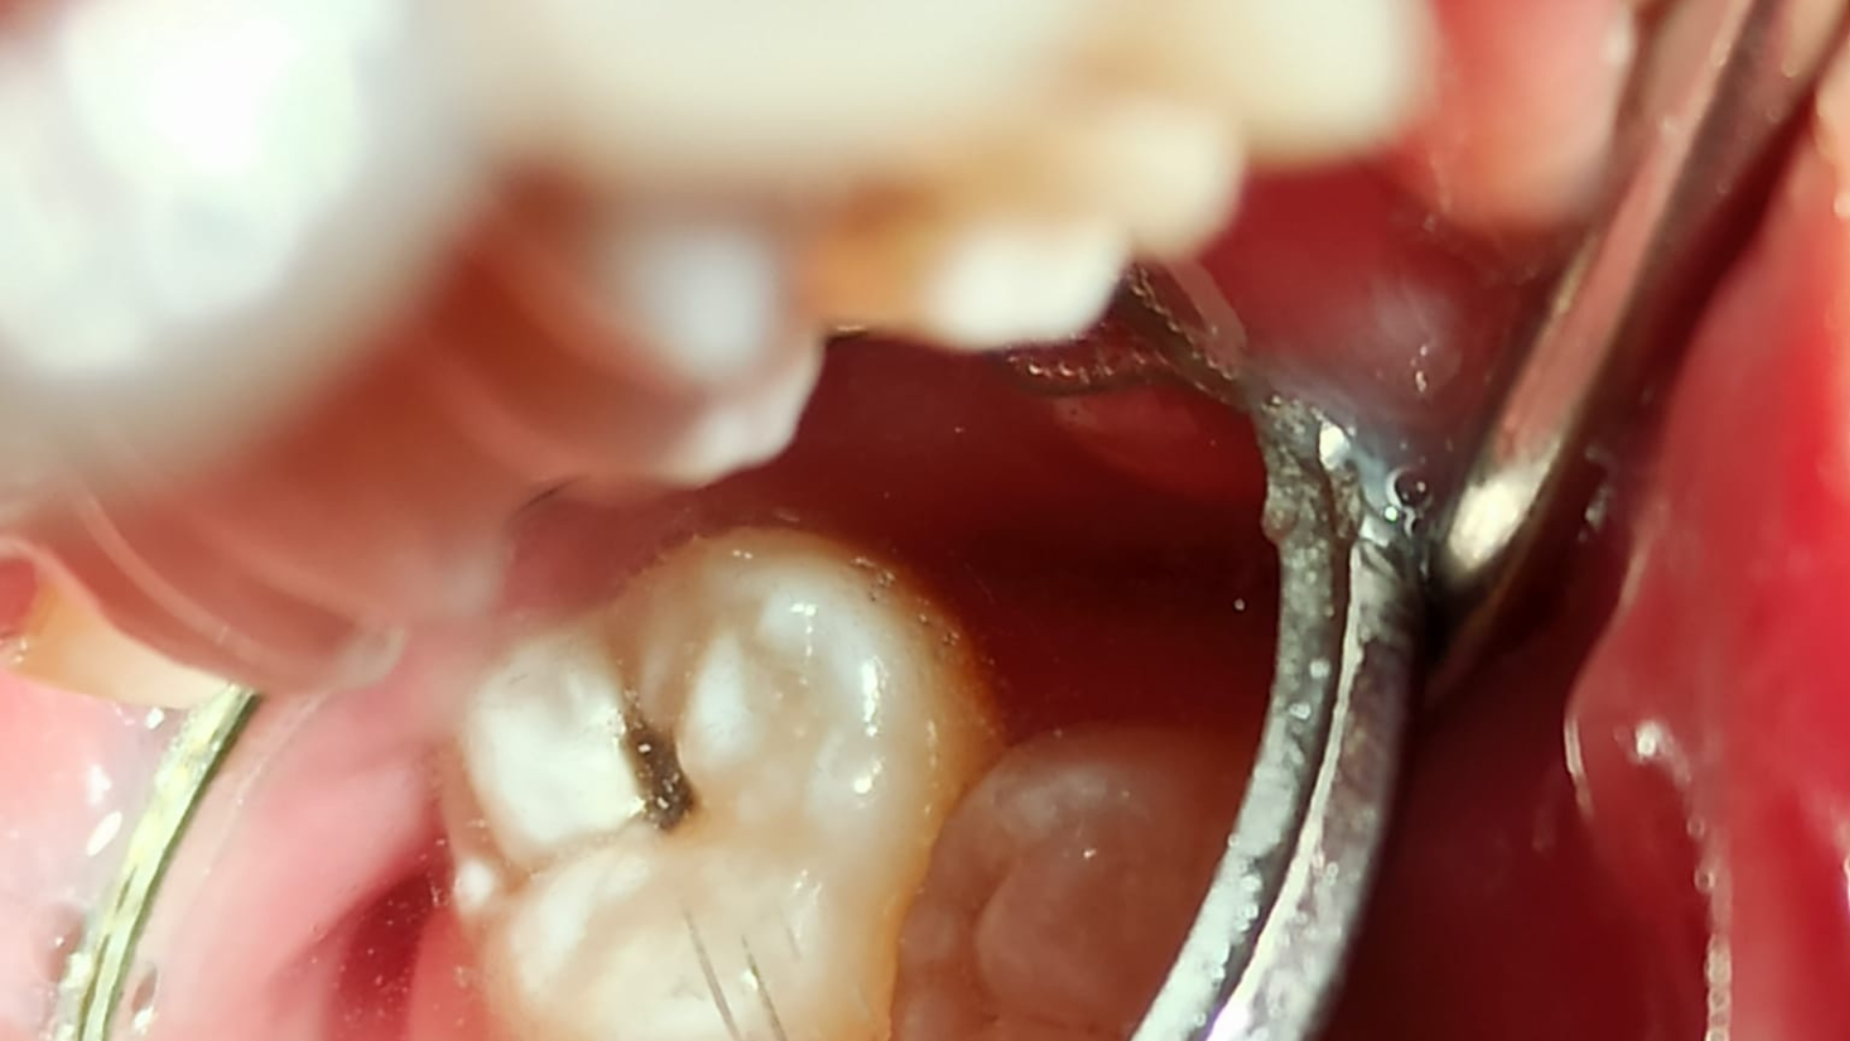 Carie dentale: come si cura e come evitarla